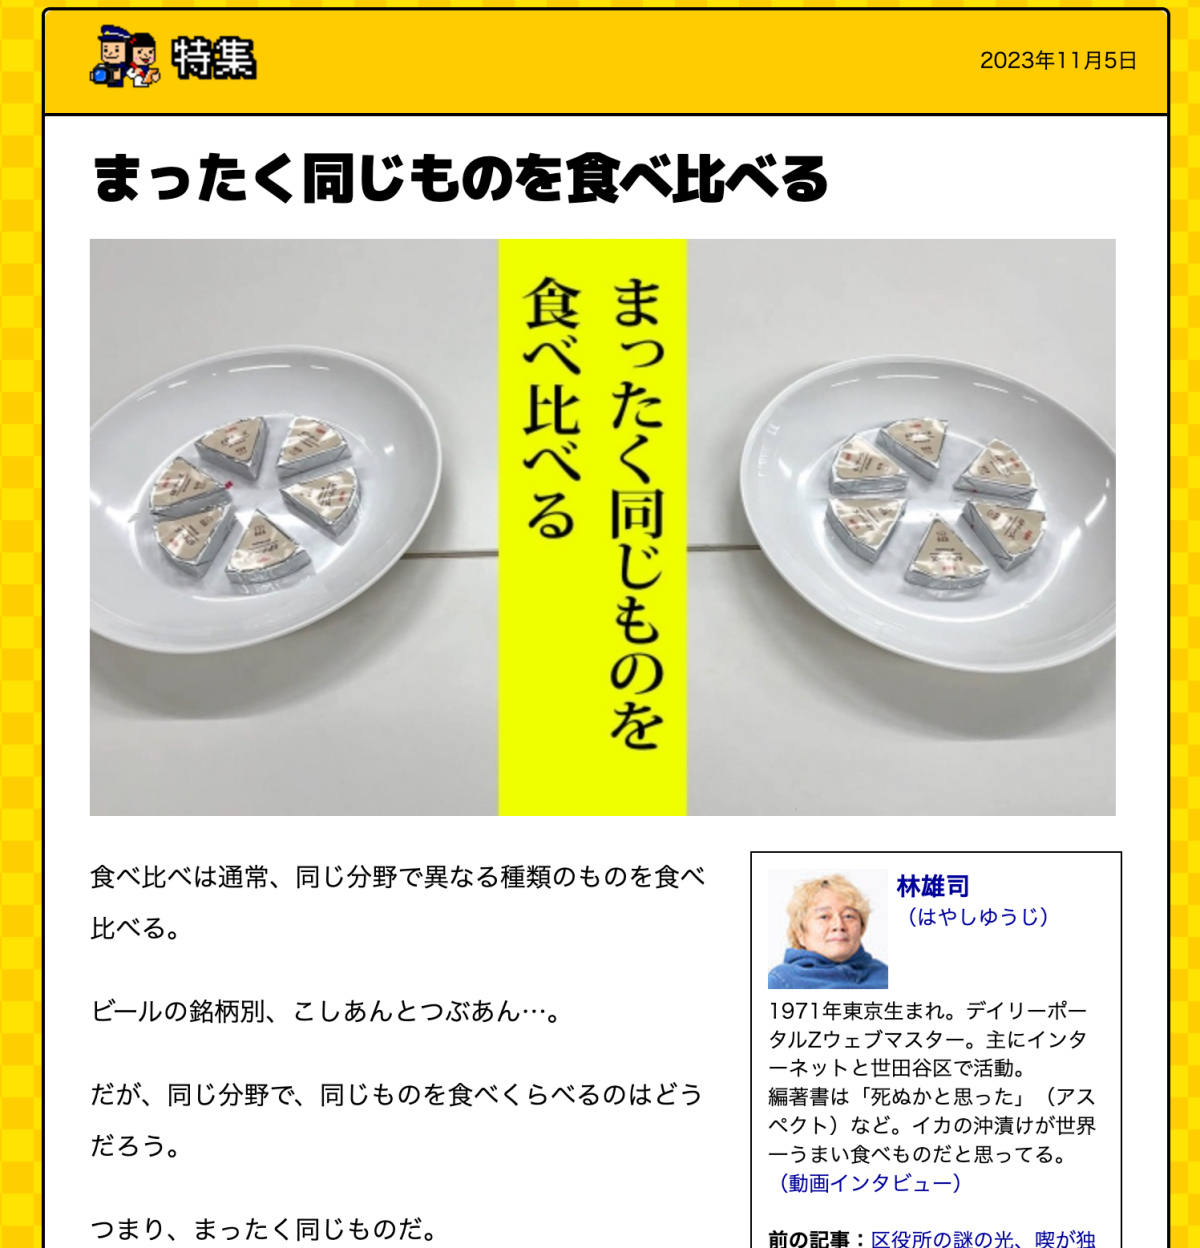 デイリーポータルZ「まったく同じものを食べ比べる」記事のTOP画像のスクリーンショット